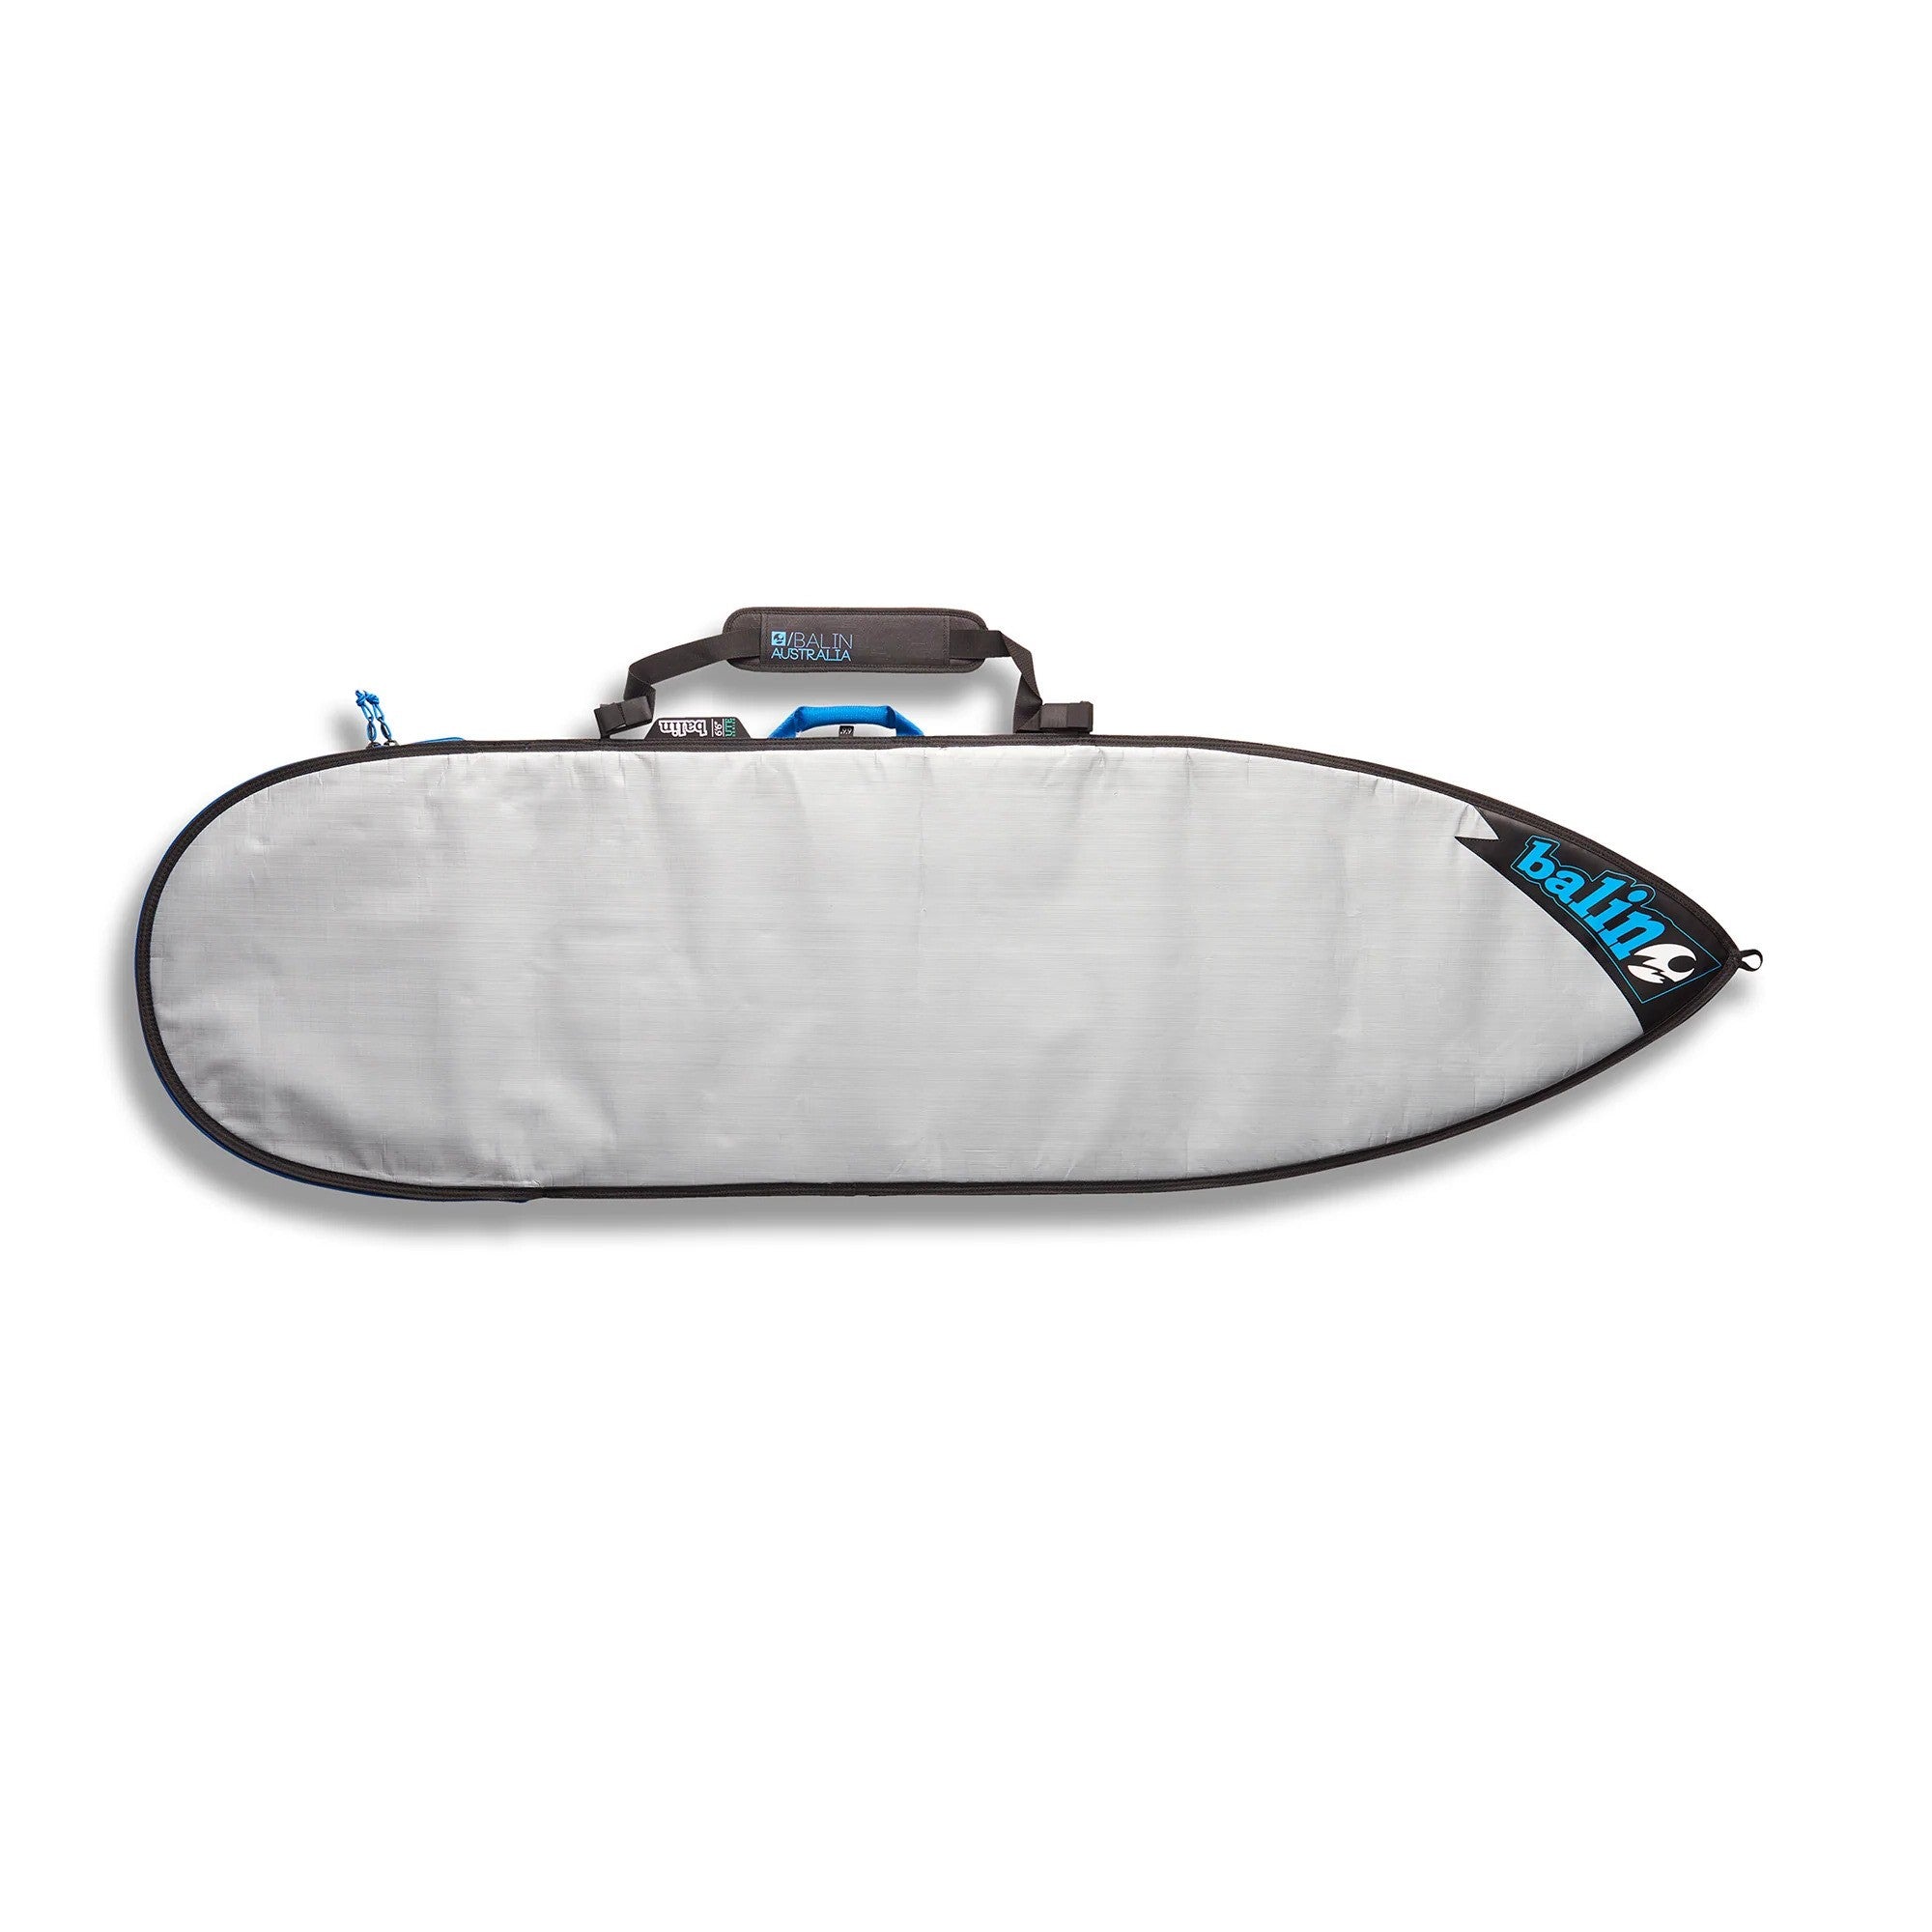 BALIN - Surfboard cover 1 board - UTE - Shortboard 5mm - Blue